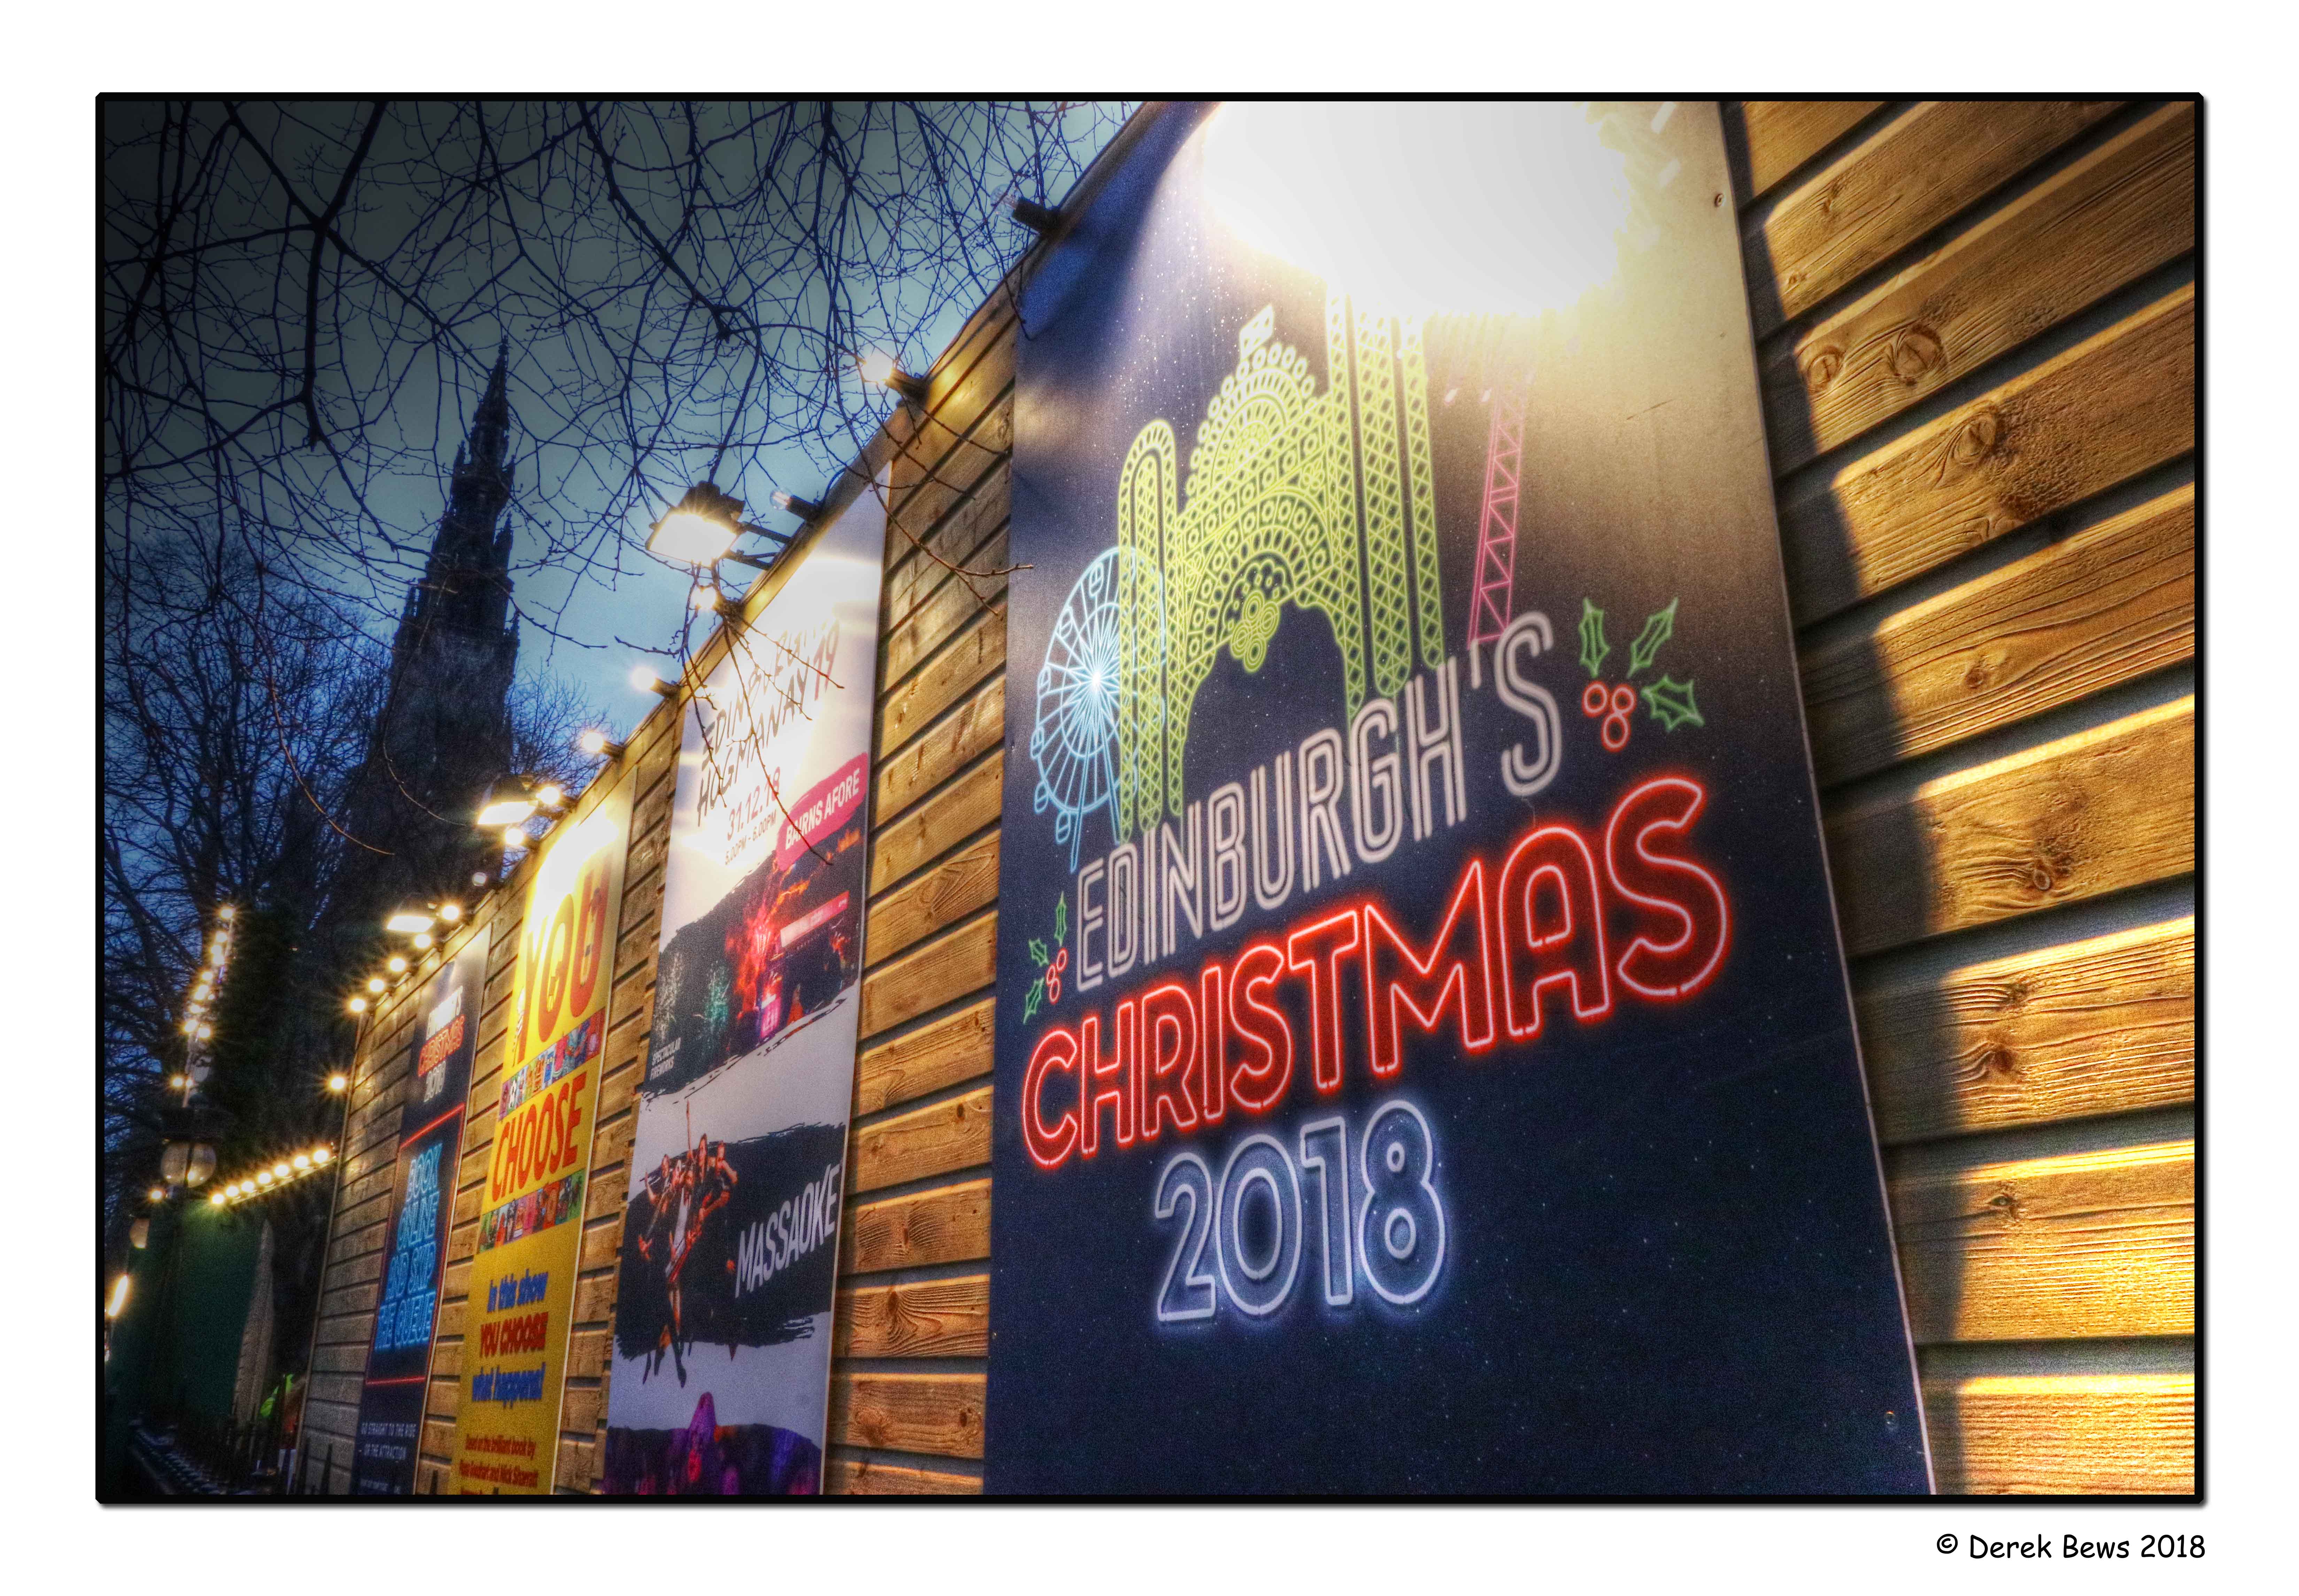 Edinburghs Christmas